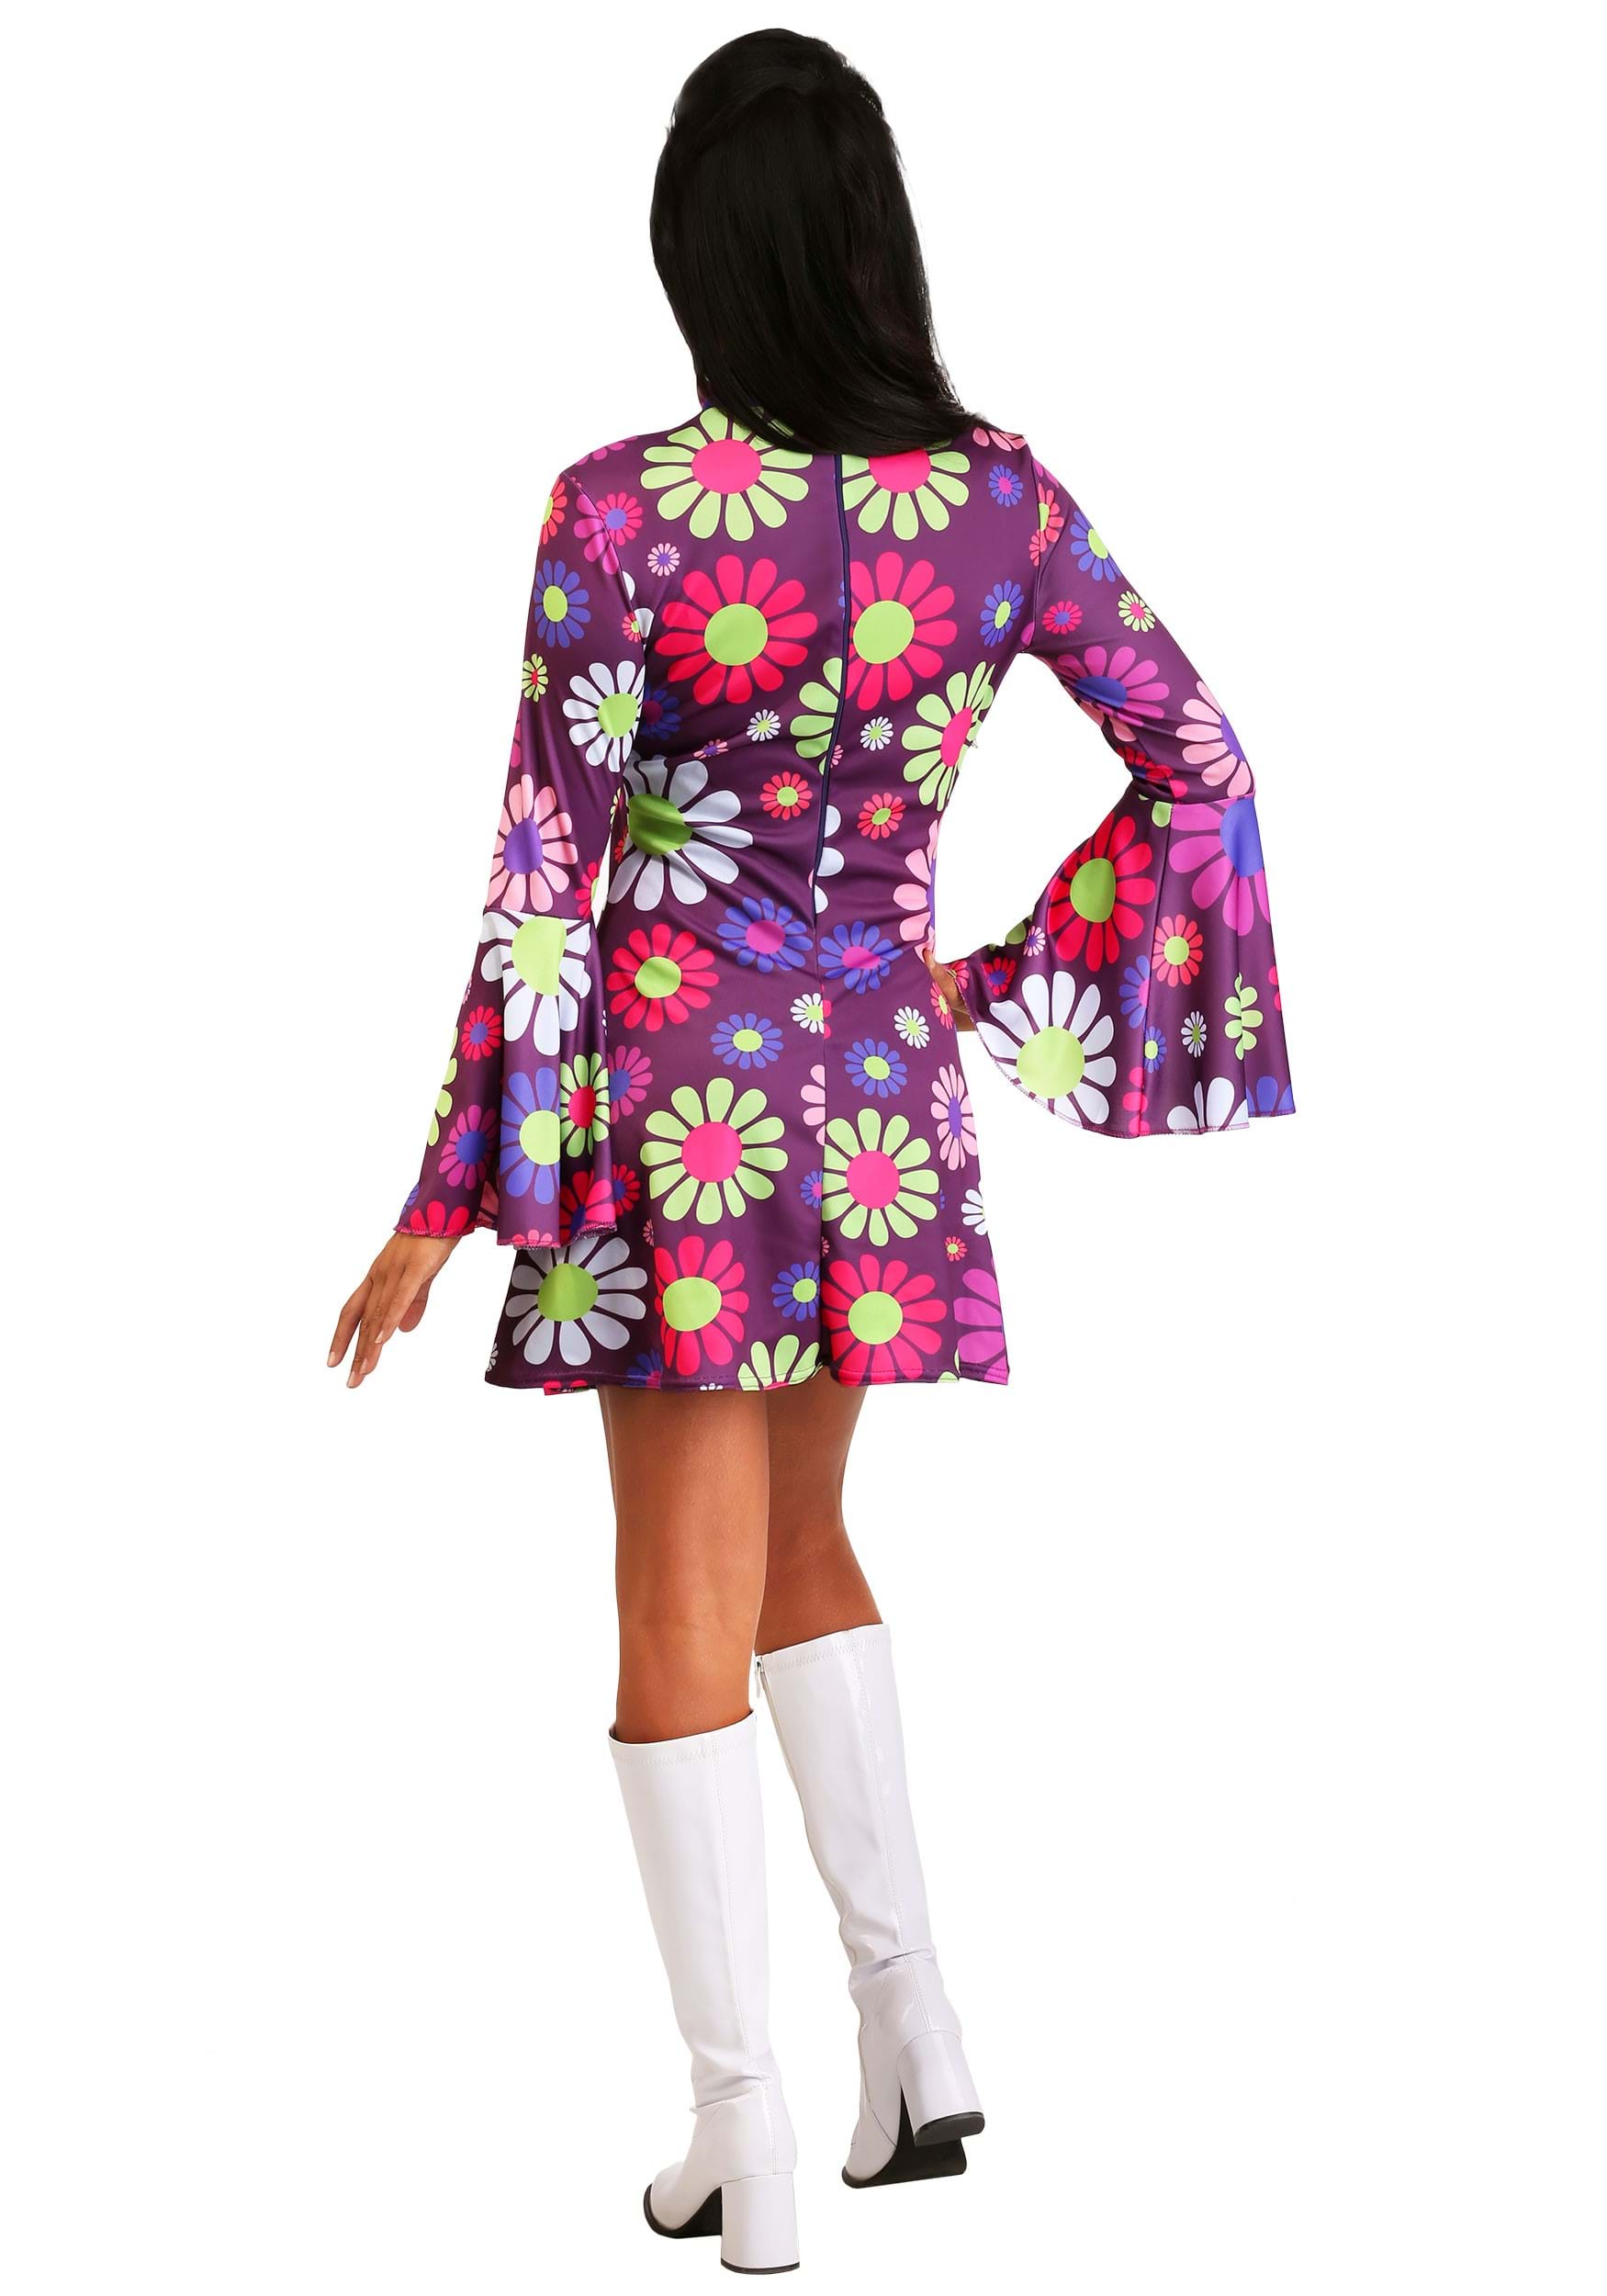 Adult Groovy Flower Power Women's Fancy Dress Costume